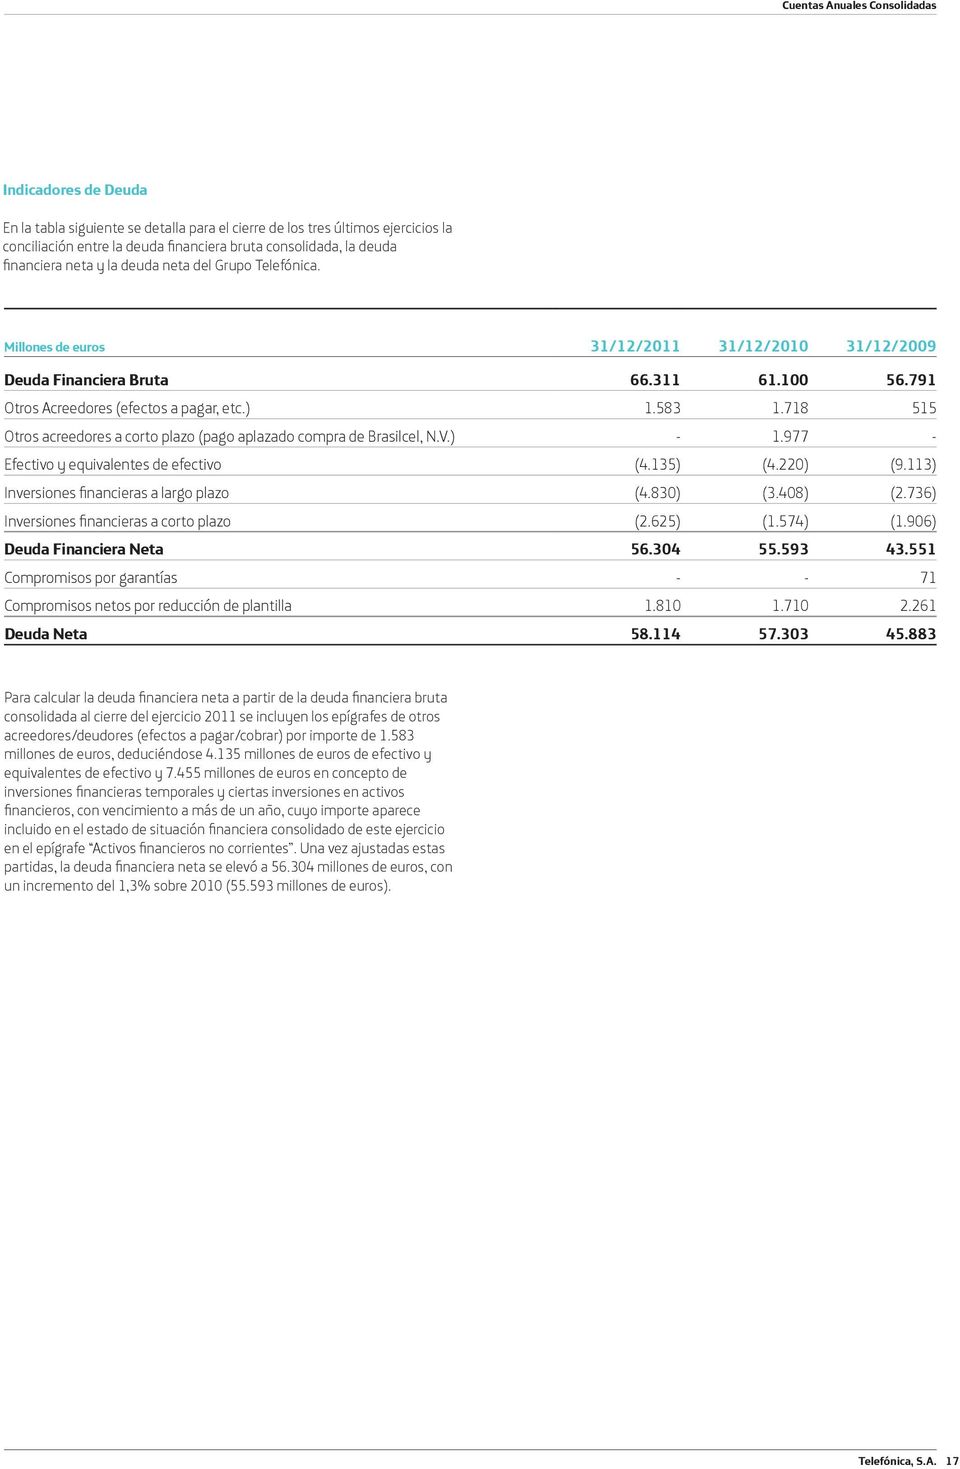 718 515 Otros acreedores a corto plazo (pago aplazado compra de Brasilcel, N.V.) - 1.977 - Efectivo y equivalentes de efectivo (4.135) (4.220) (9.113) Inversiones nancieras a largo plazo (4.830) (3.